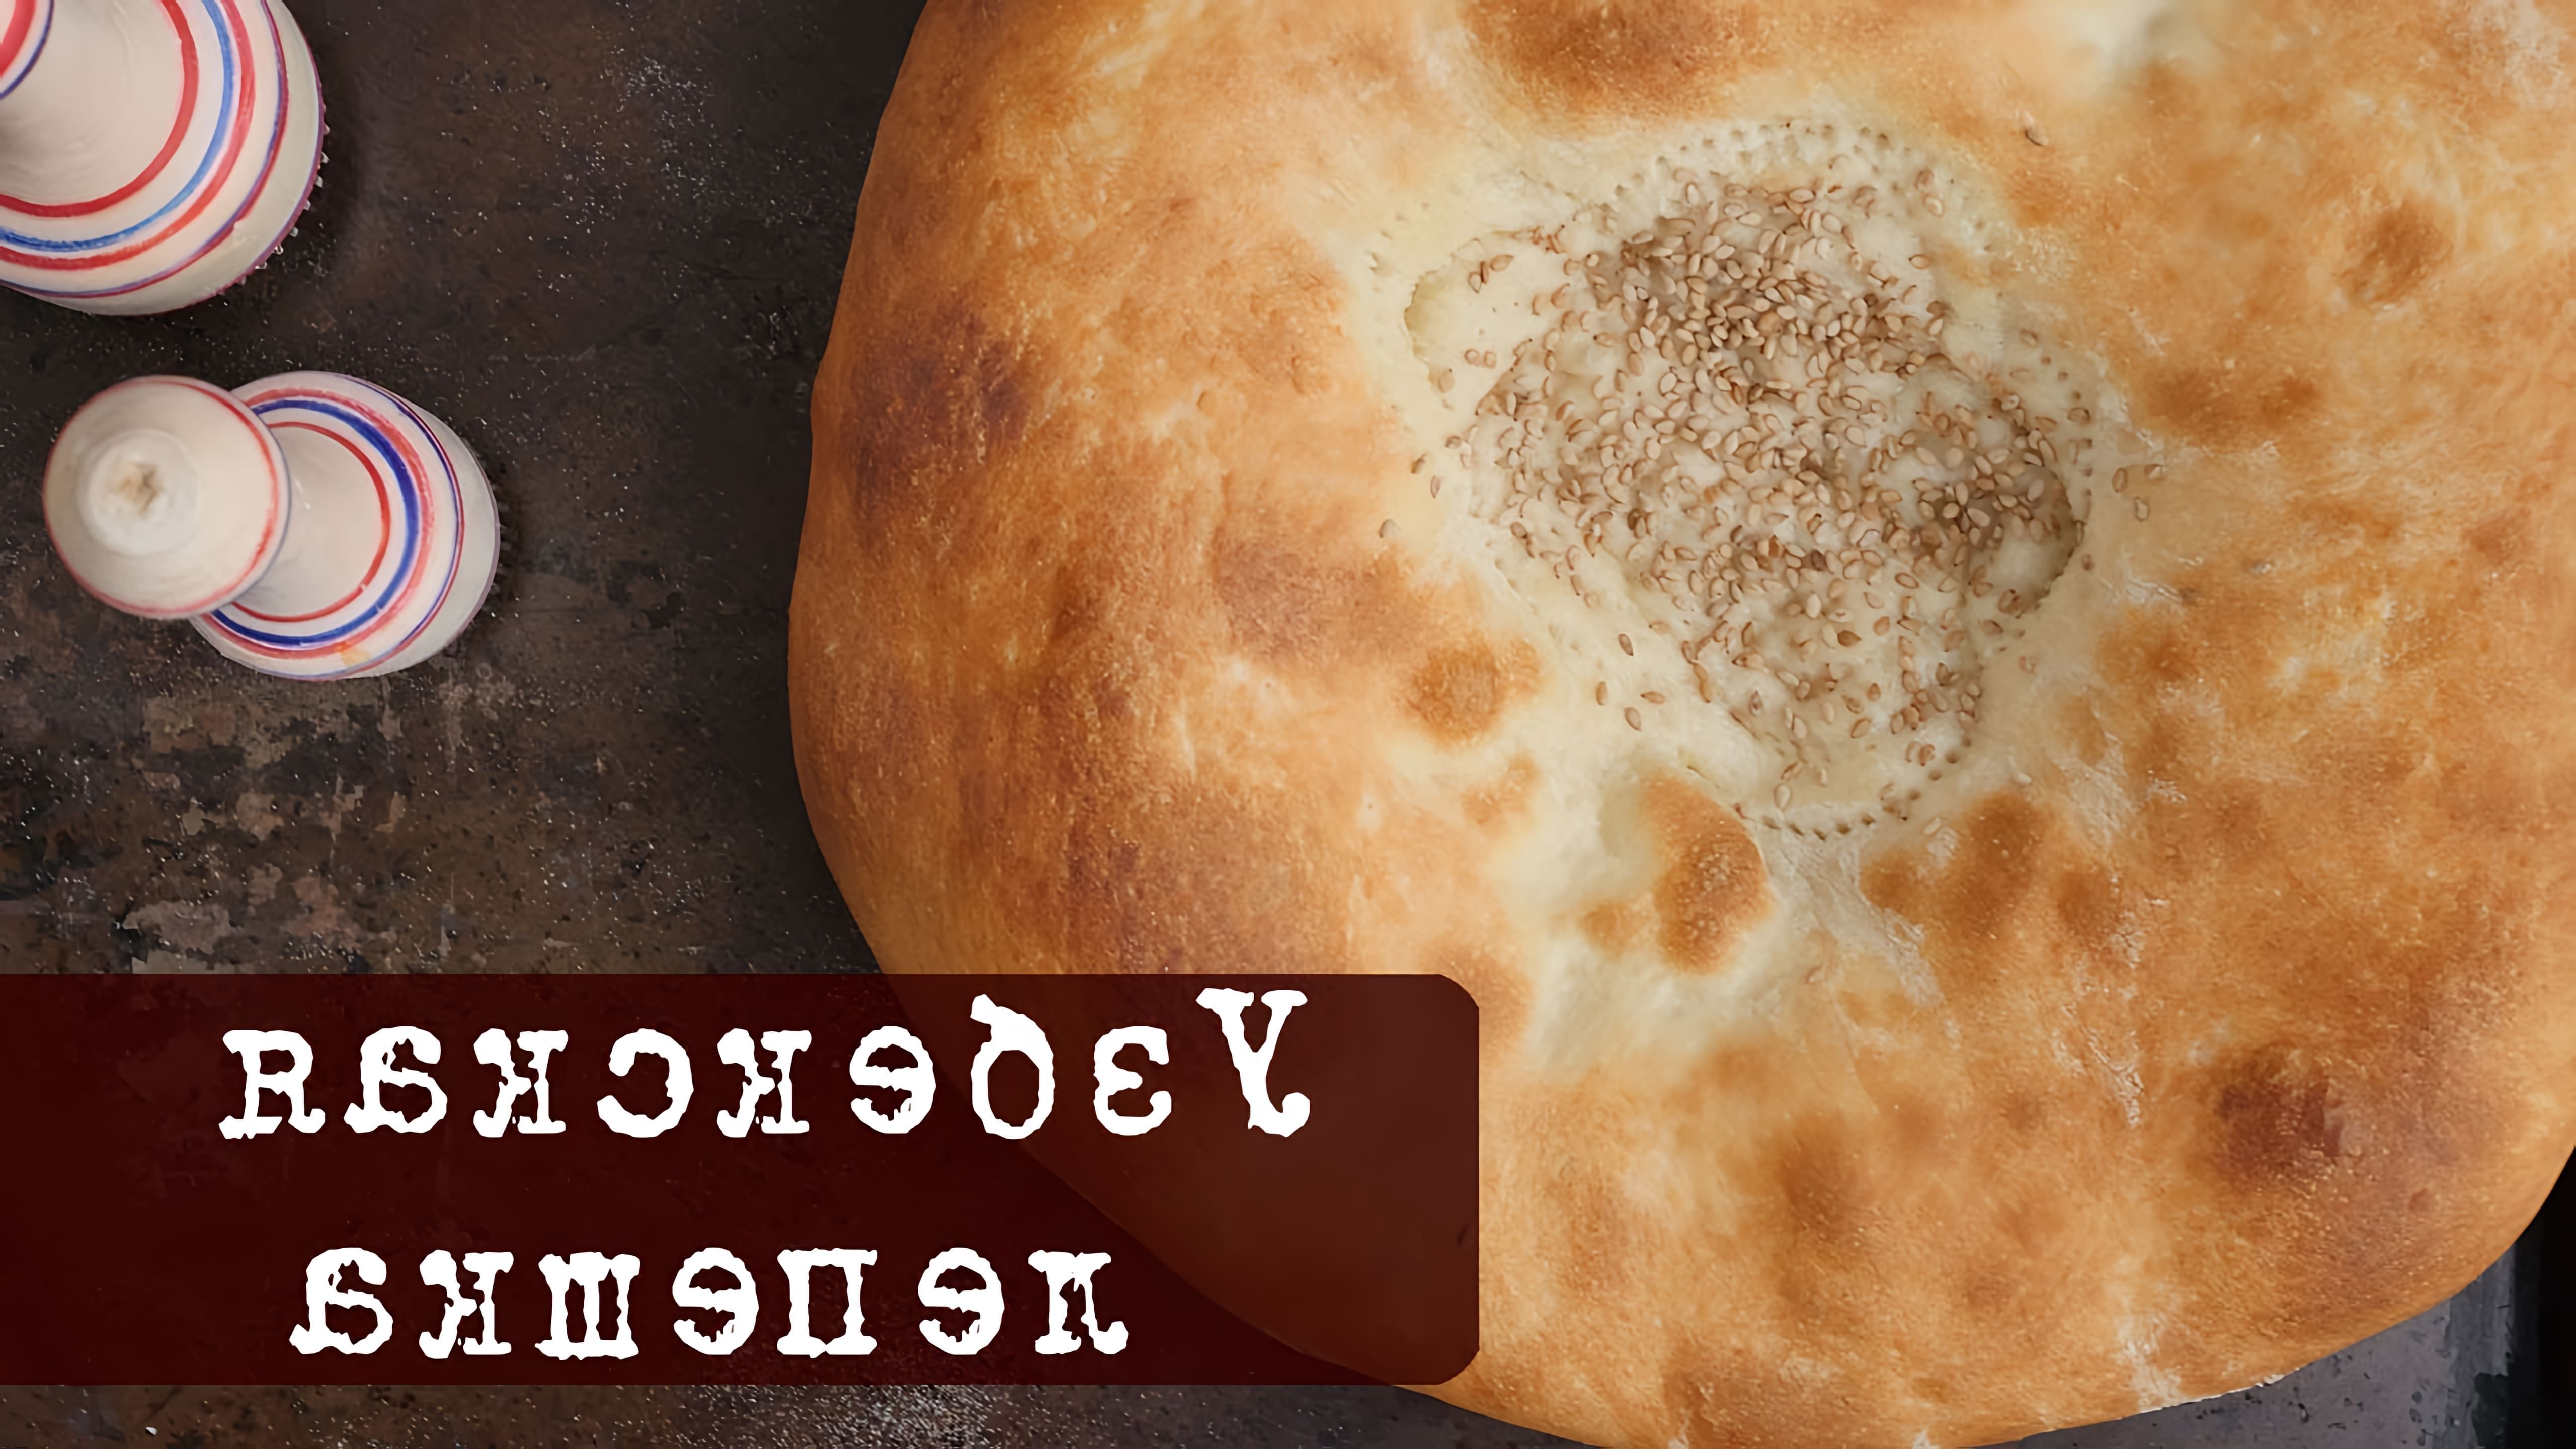 В этом видео представлен рецепт узбекской лепешки, традиционного хлеба народов Средней Азии